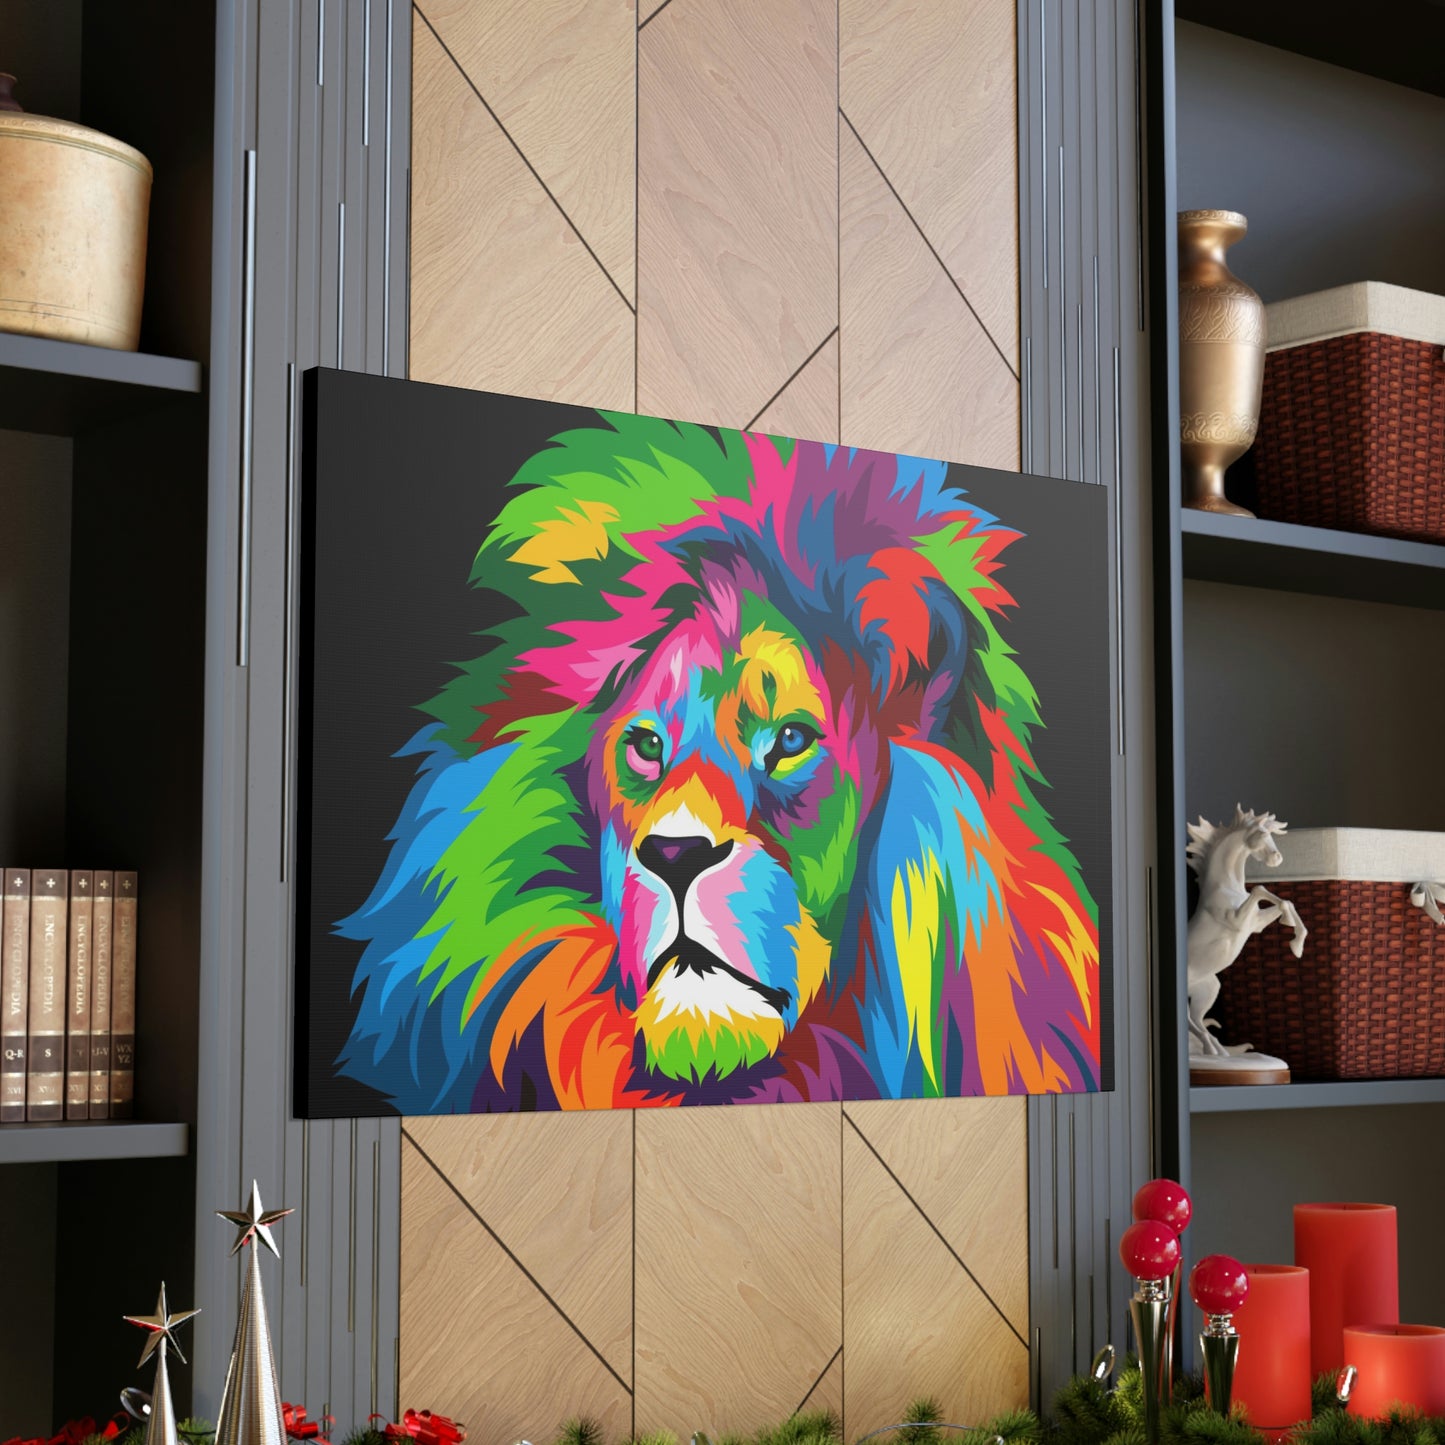 Lion Colorful Art Canvas Gallery Wraps